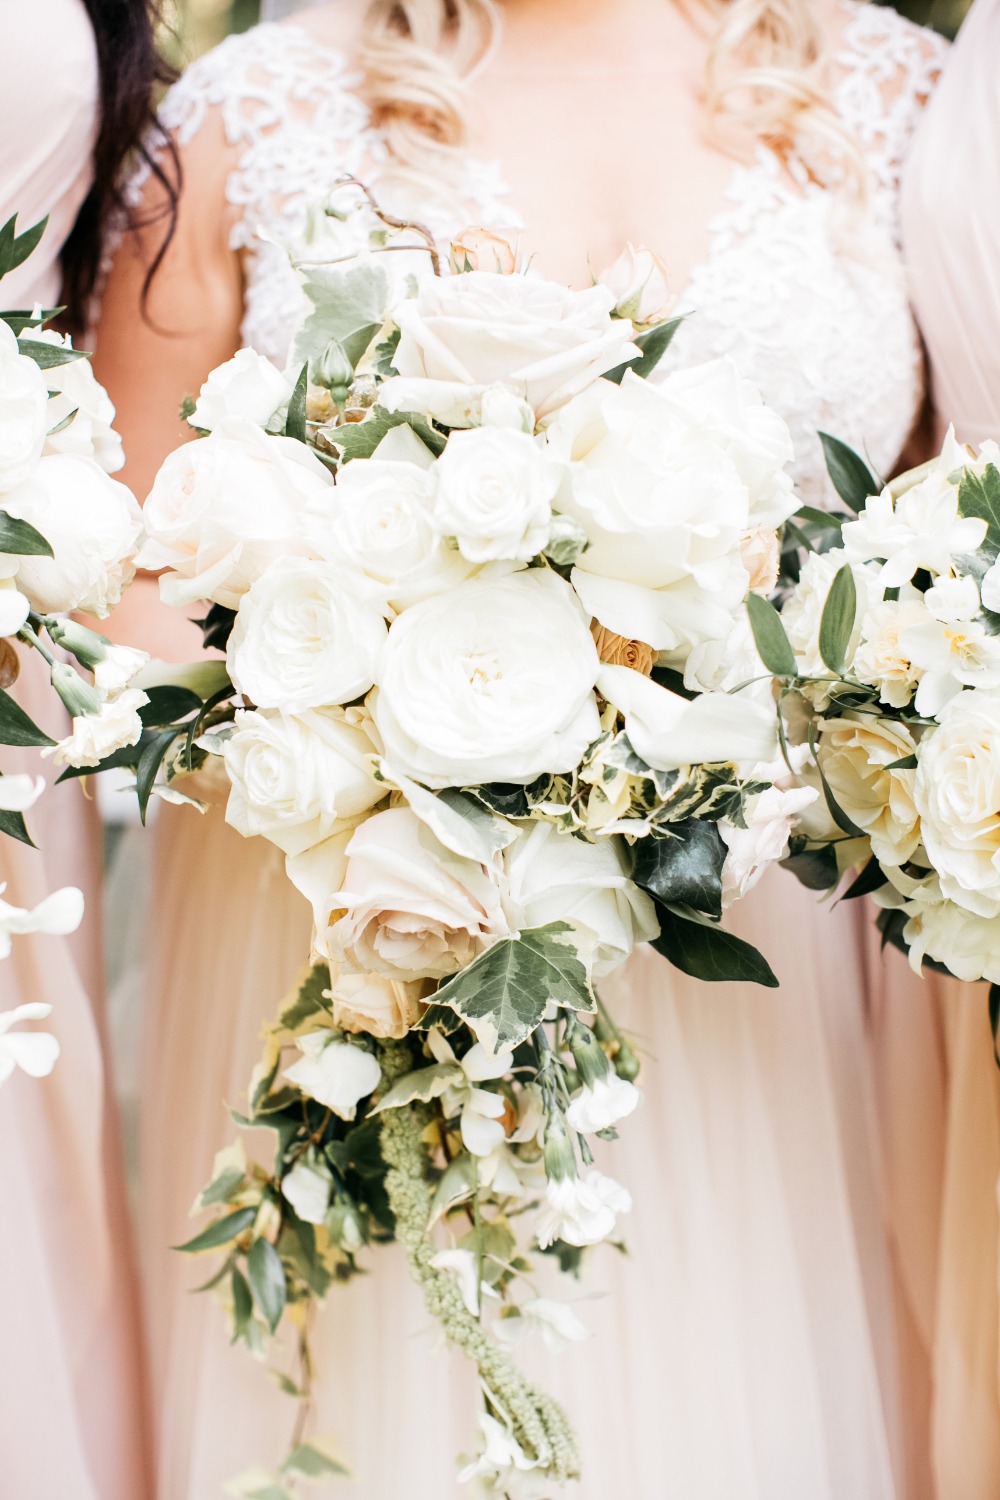 Gorgeous white wedding bouquet